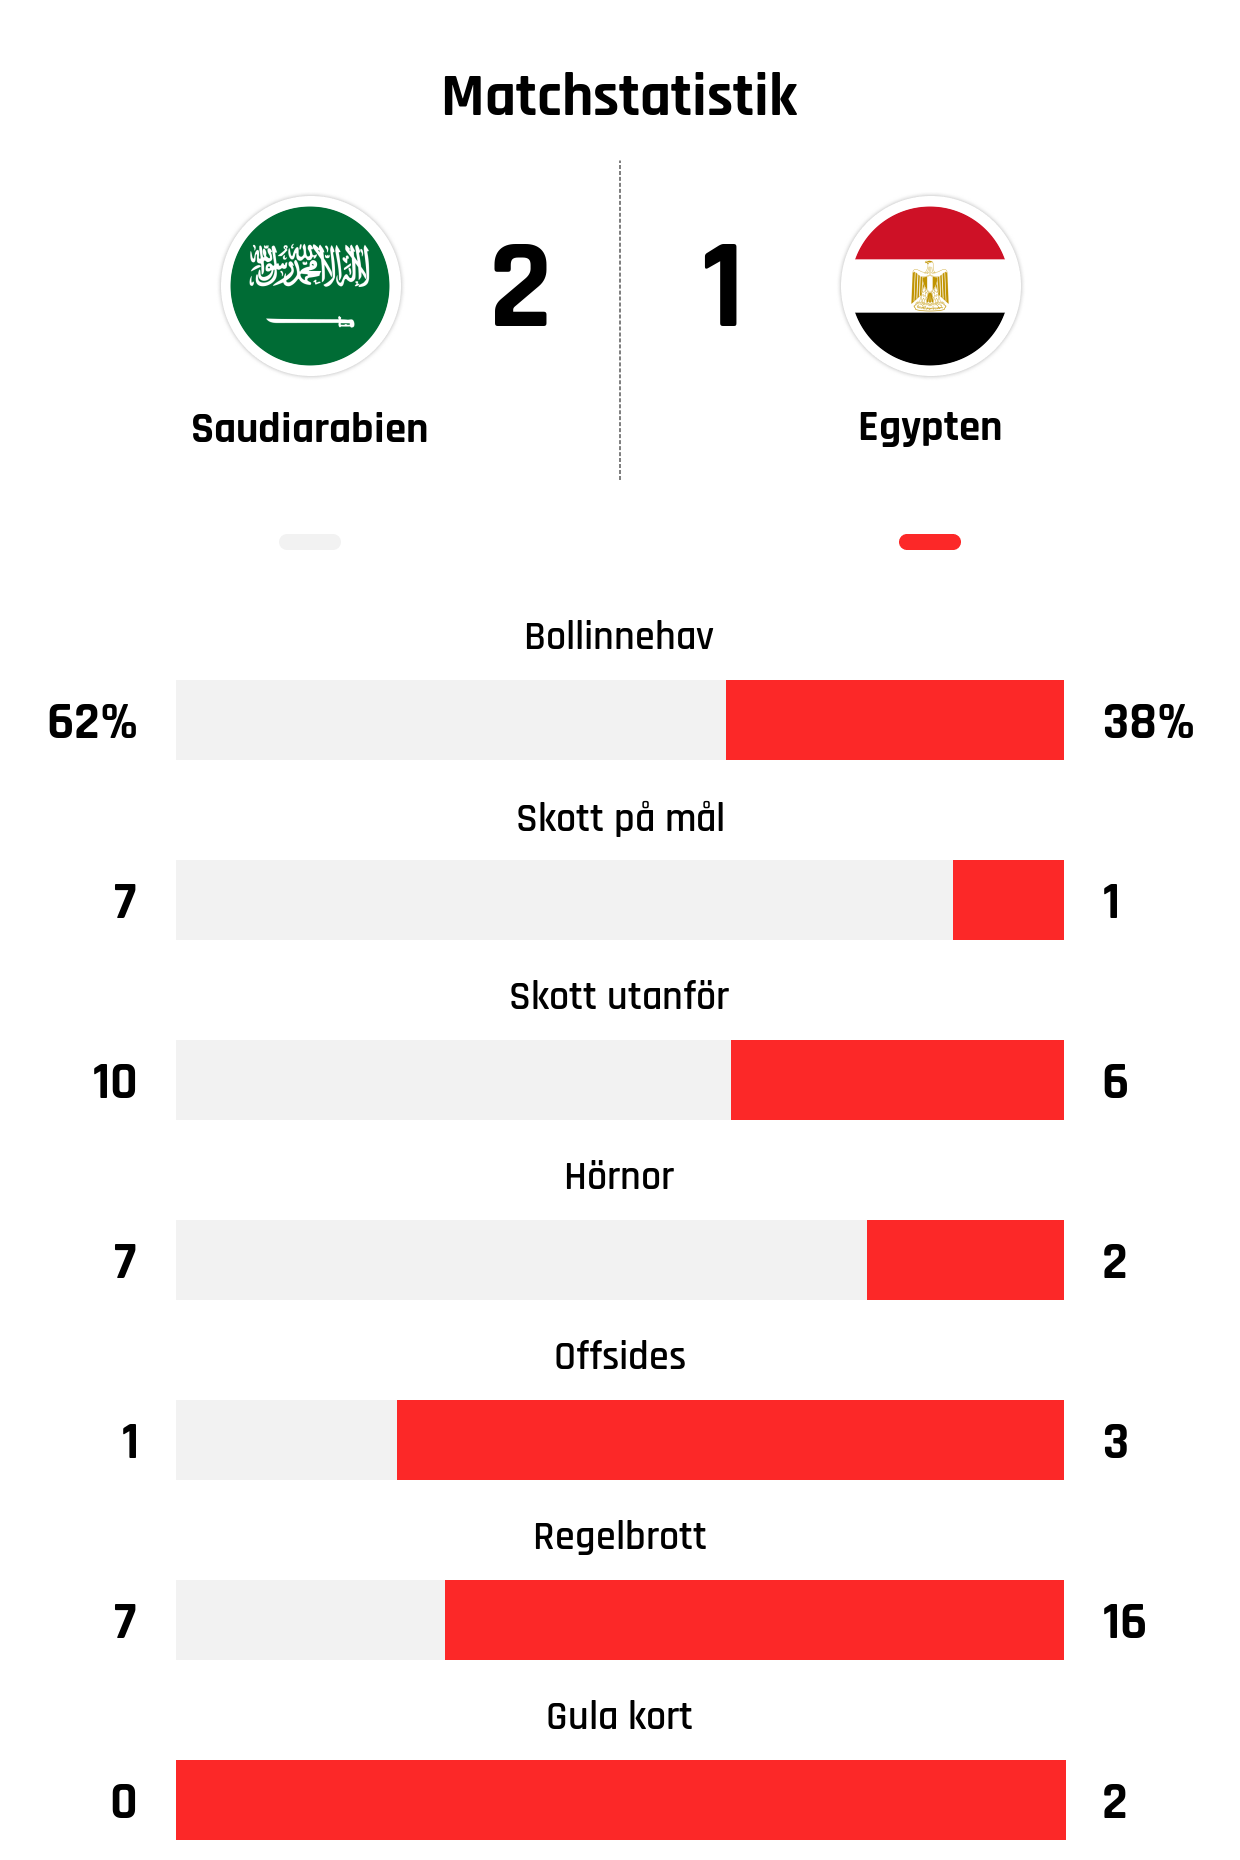 Bollinnehav 62%-38%
Skott på mål 7-1
Skott utanför 10-6
Hörnor 7-2
Offsides 1-3
Regelbrott 7-16
Gula kort 0-2